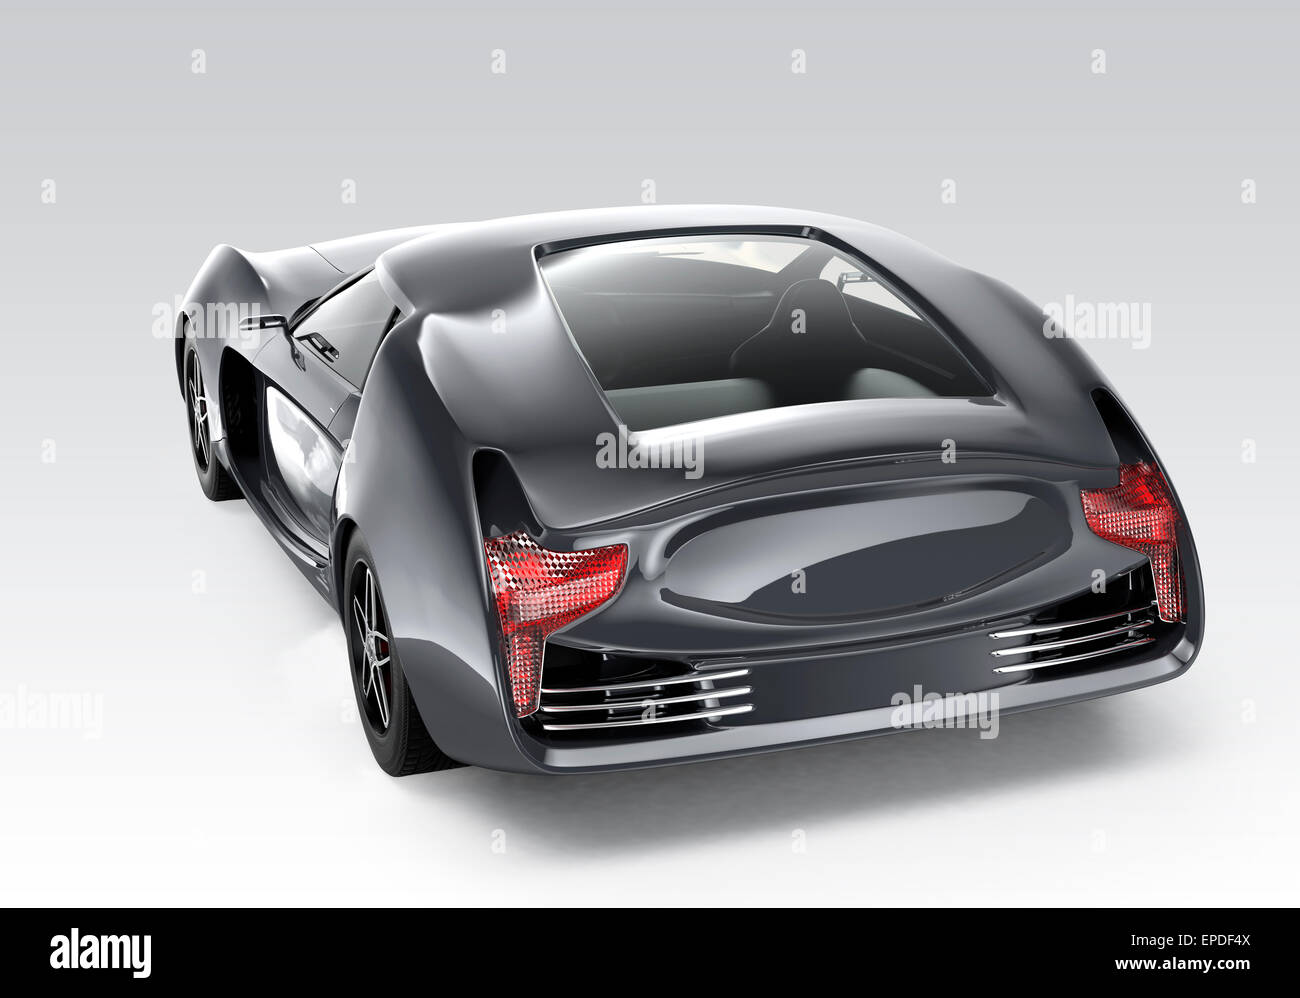 Vue arrière de voiture de sport noir isolé sur fond gris avec clipping path. conception originale. Banque D'Images